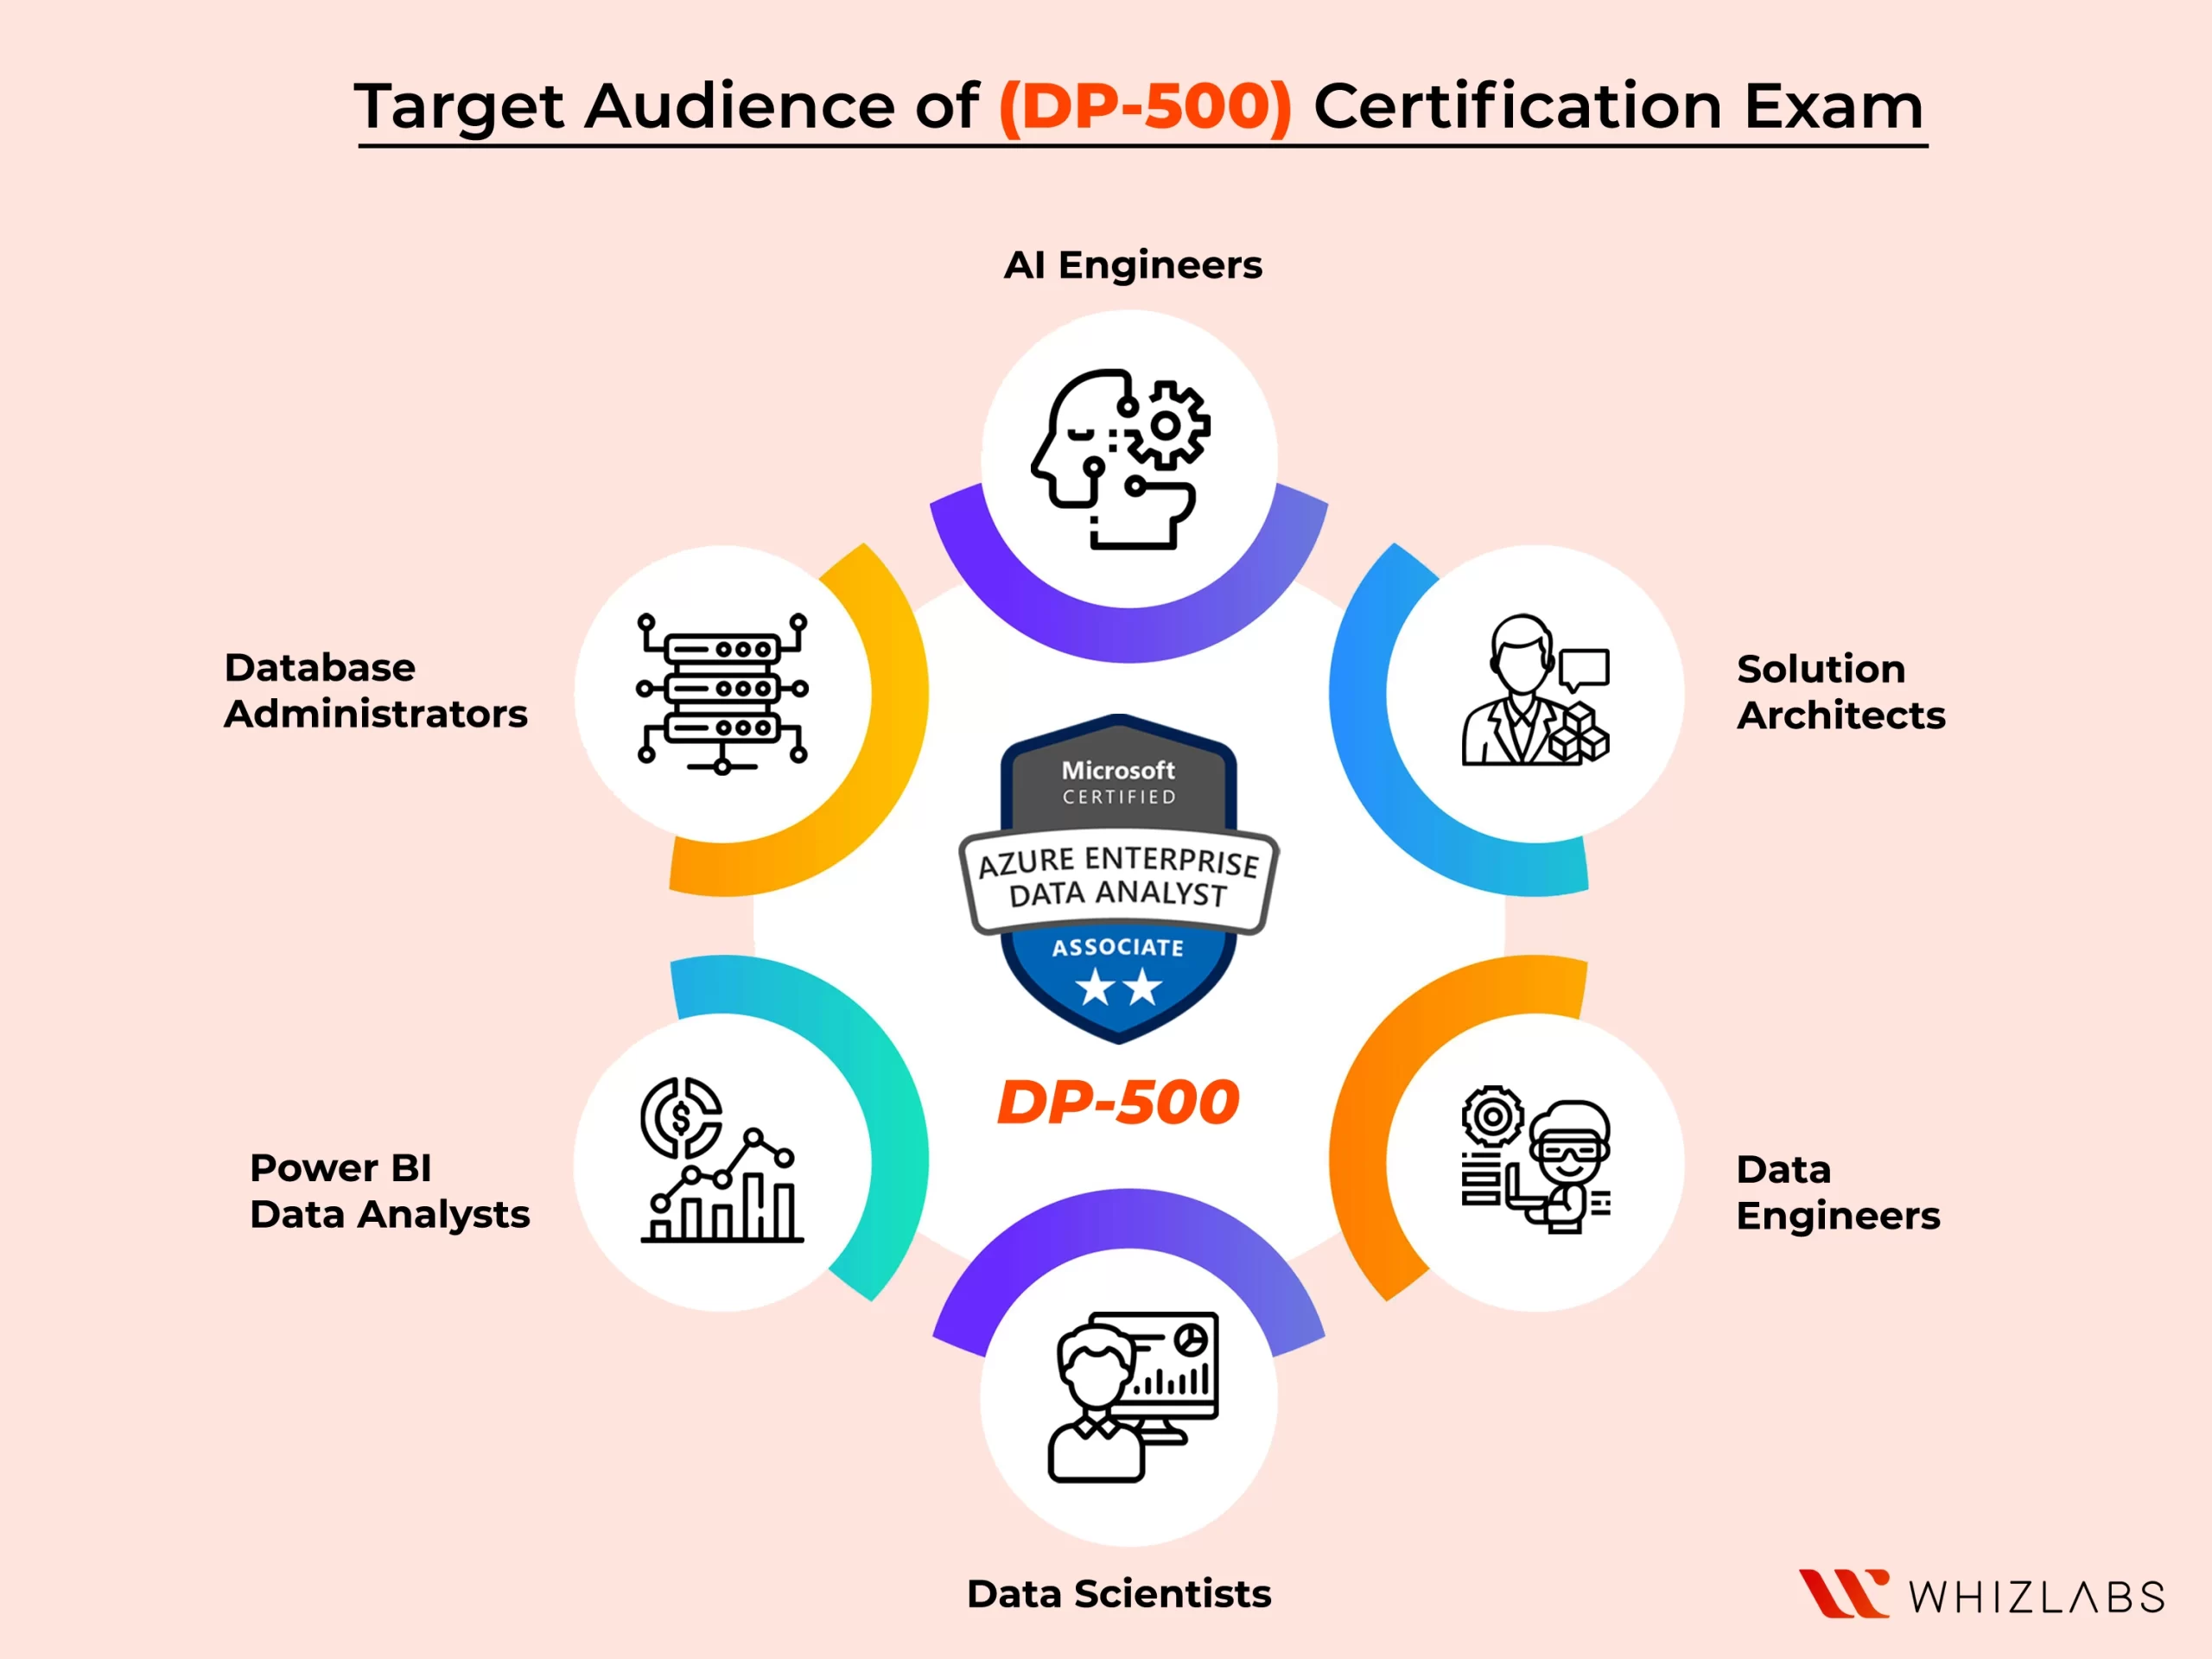 DP-500 Certification